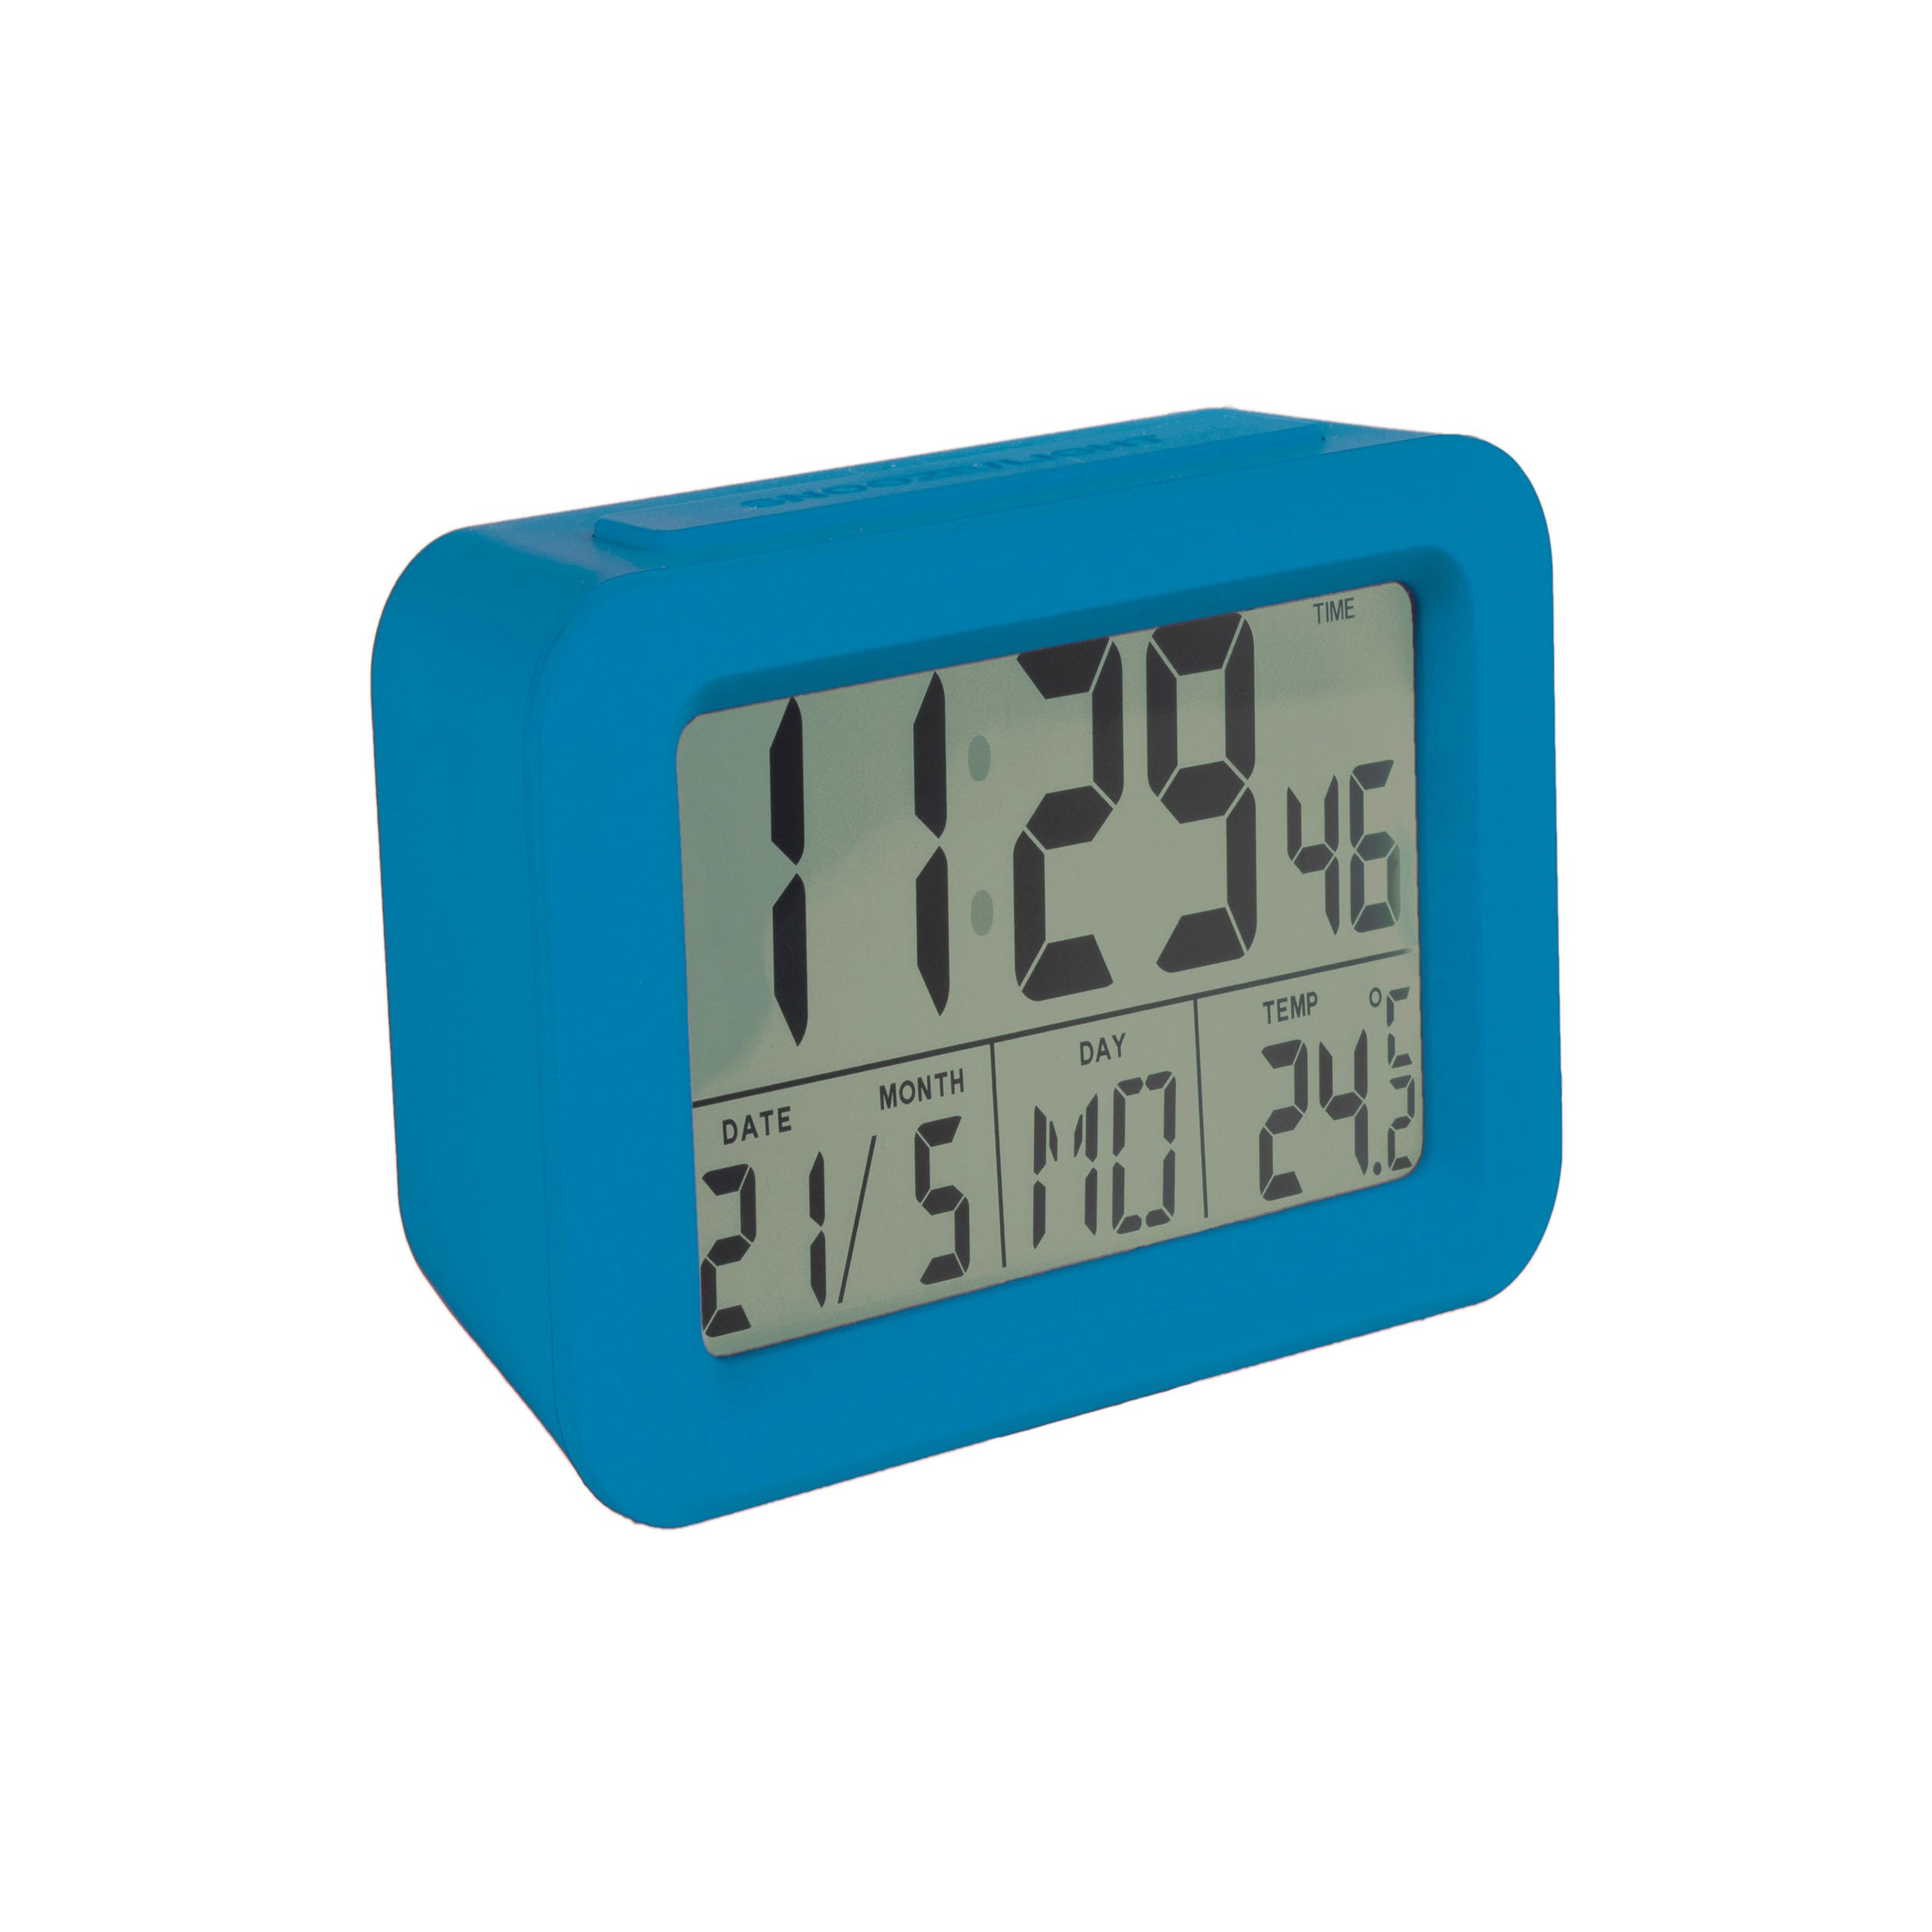 Fisura – Reloj despertador digital azul LED. Reloj indicador de fecha y  temperatura. Botón Snooze. 2 Pilas AAA. Goma ABS. Medidas: 12 x 5,5 x 7